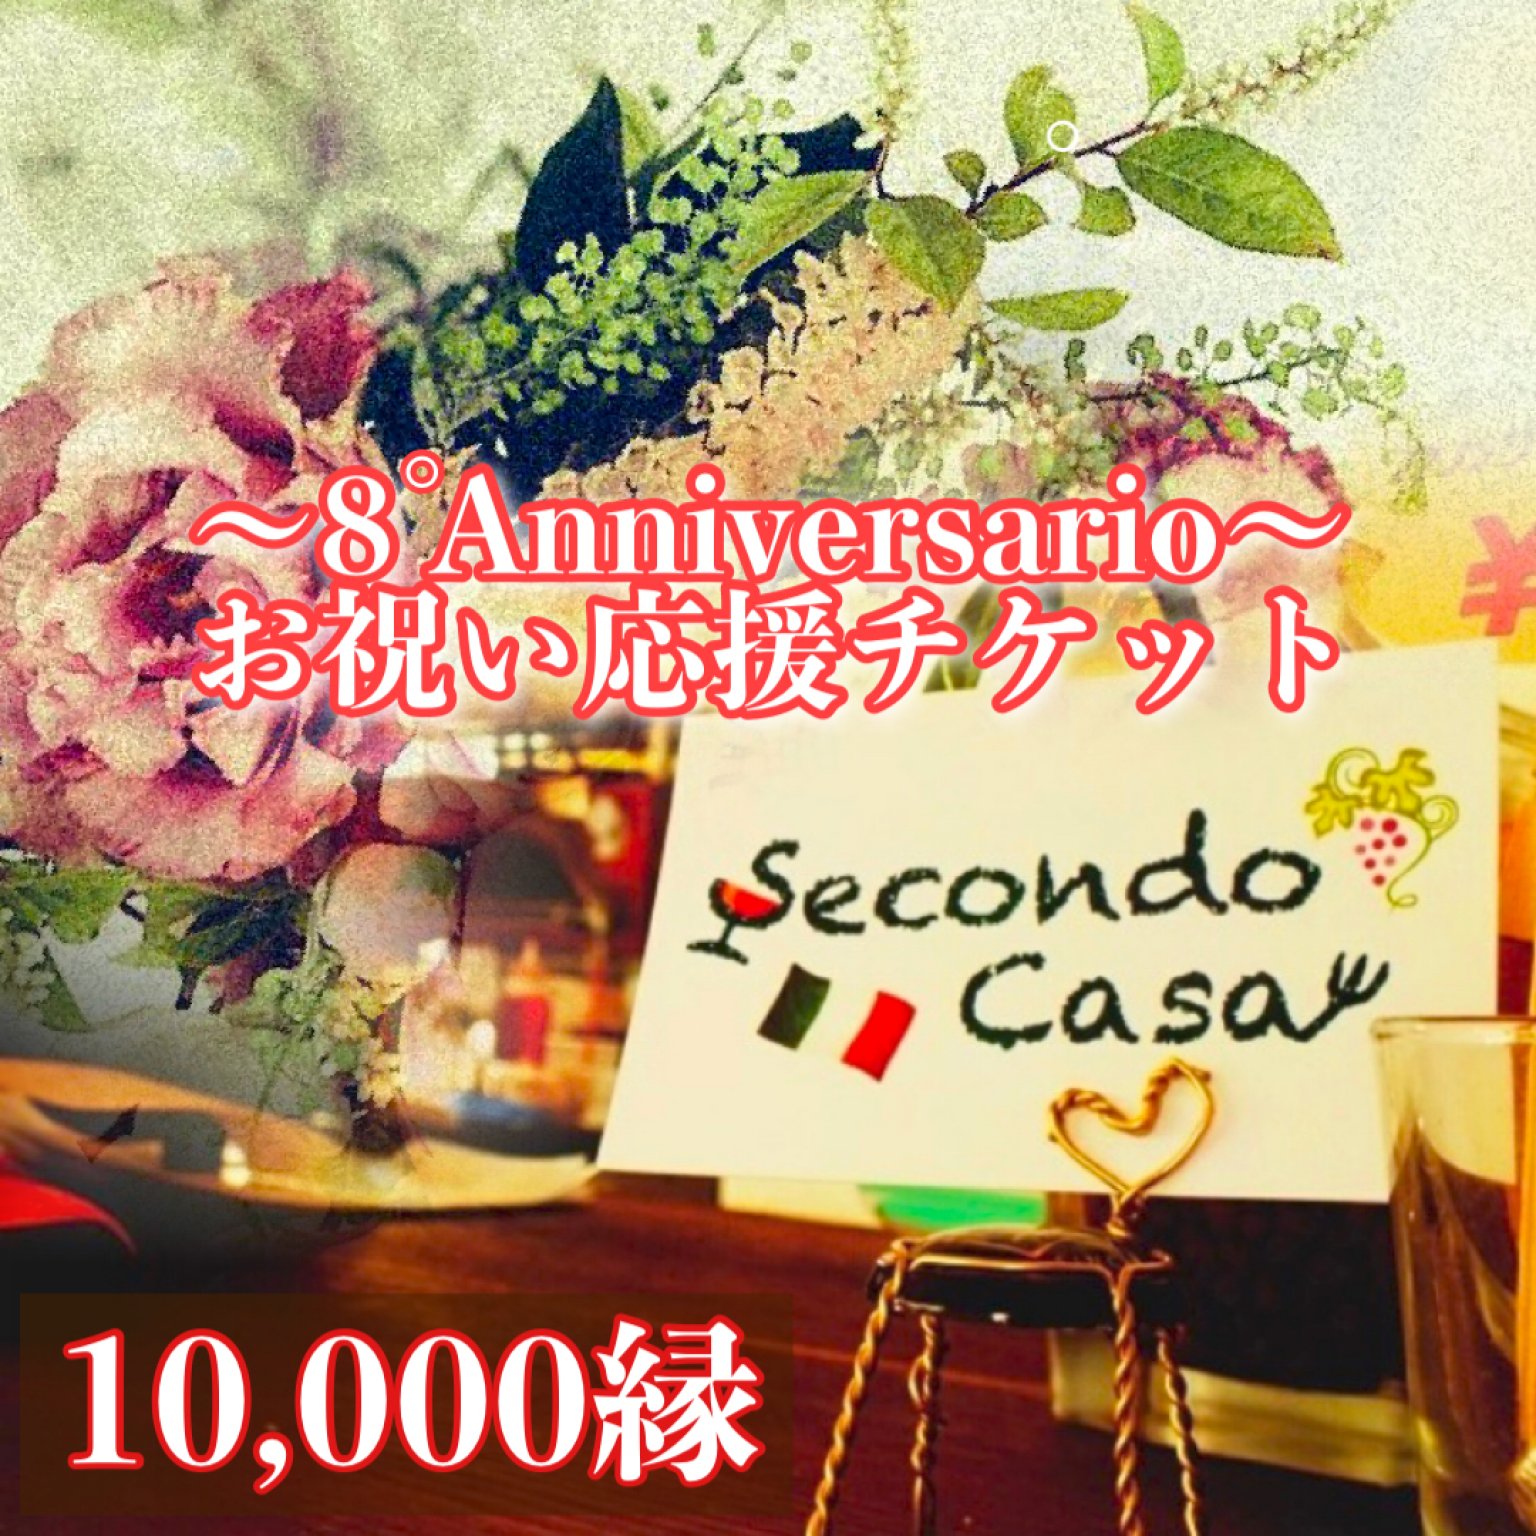 【SecondoCasa】8周年/10000縁/お祝い応援チケット